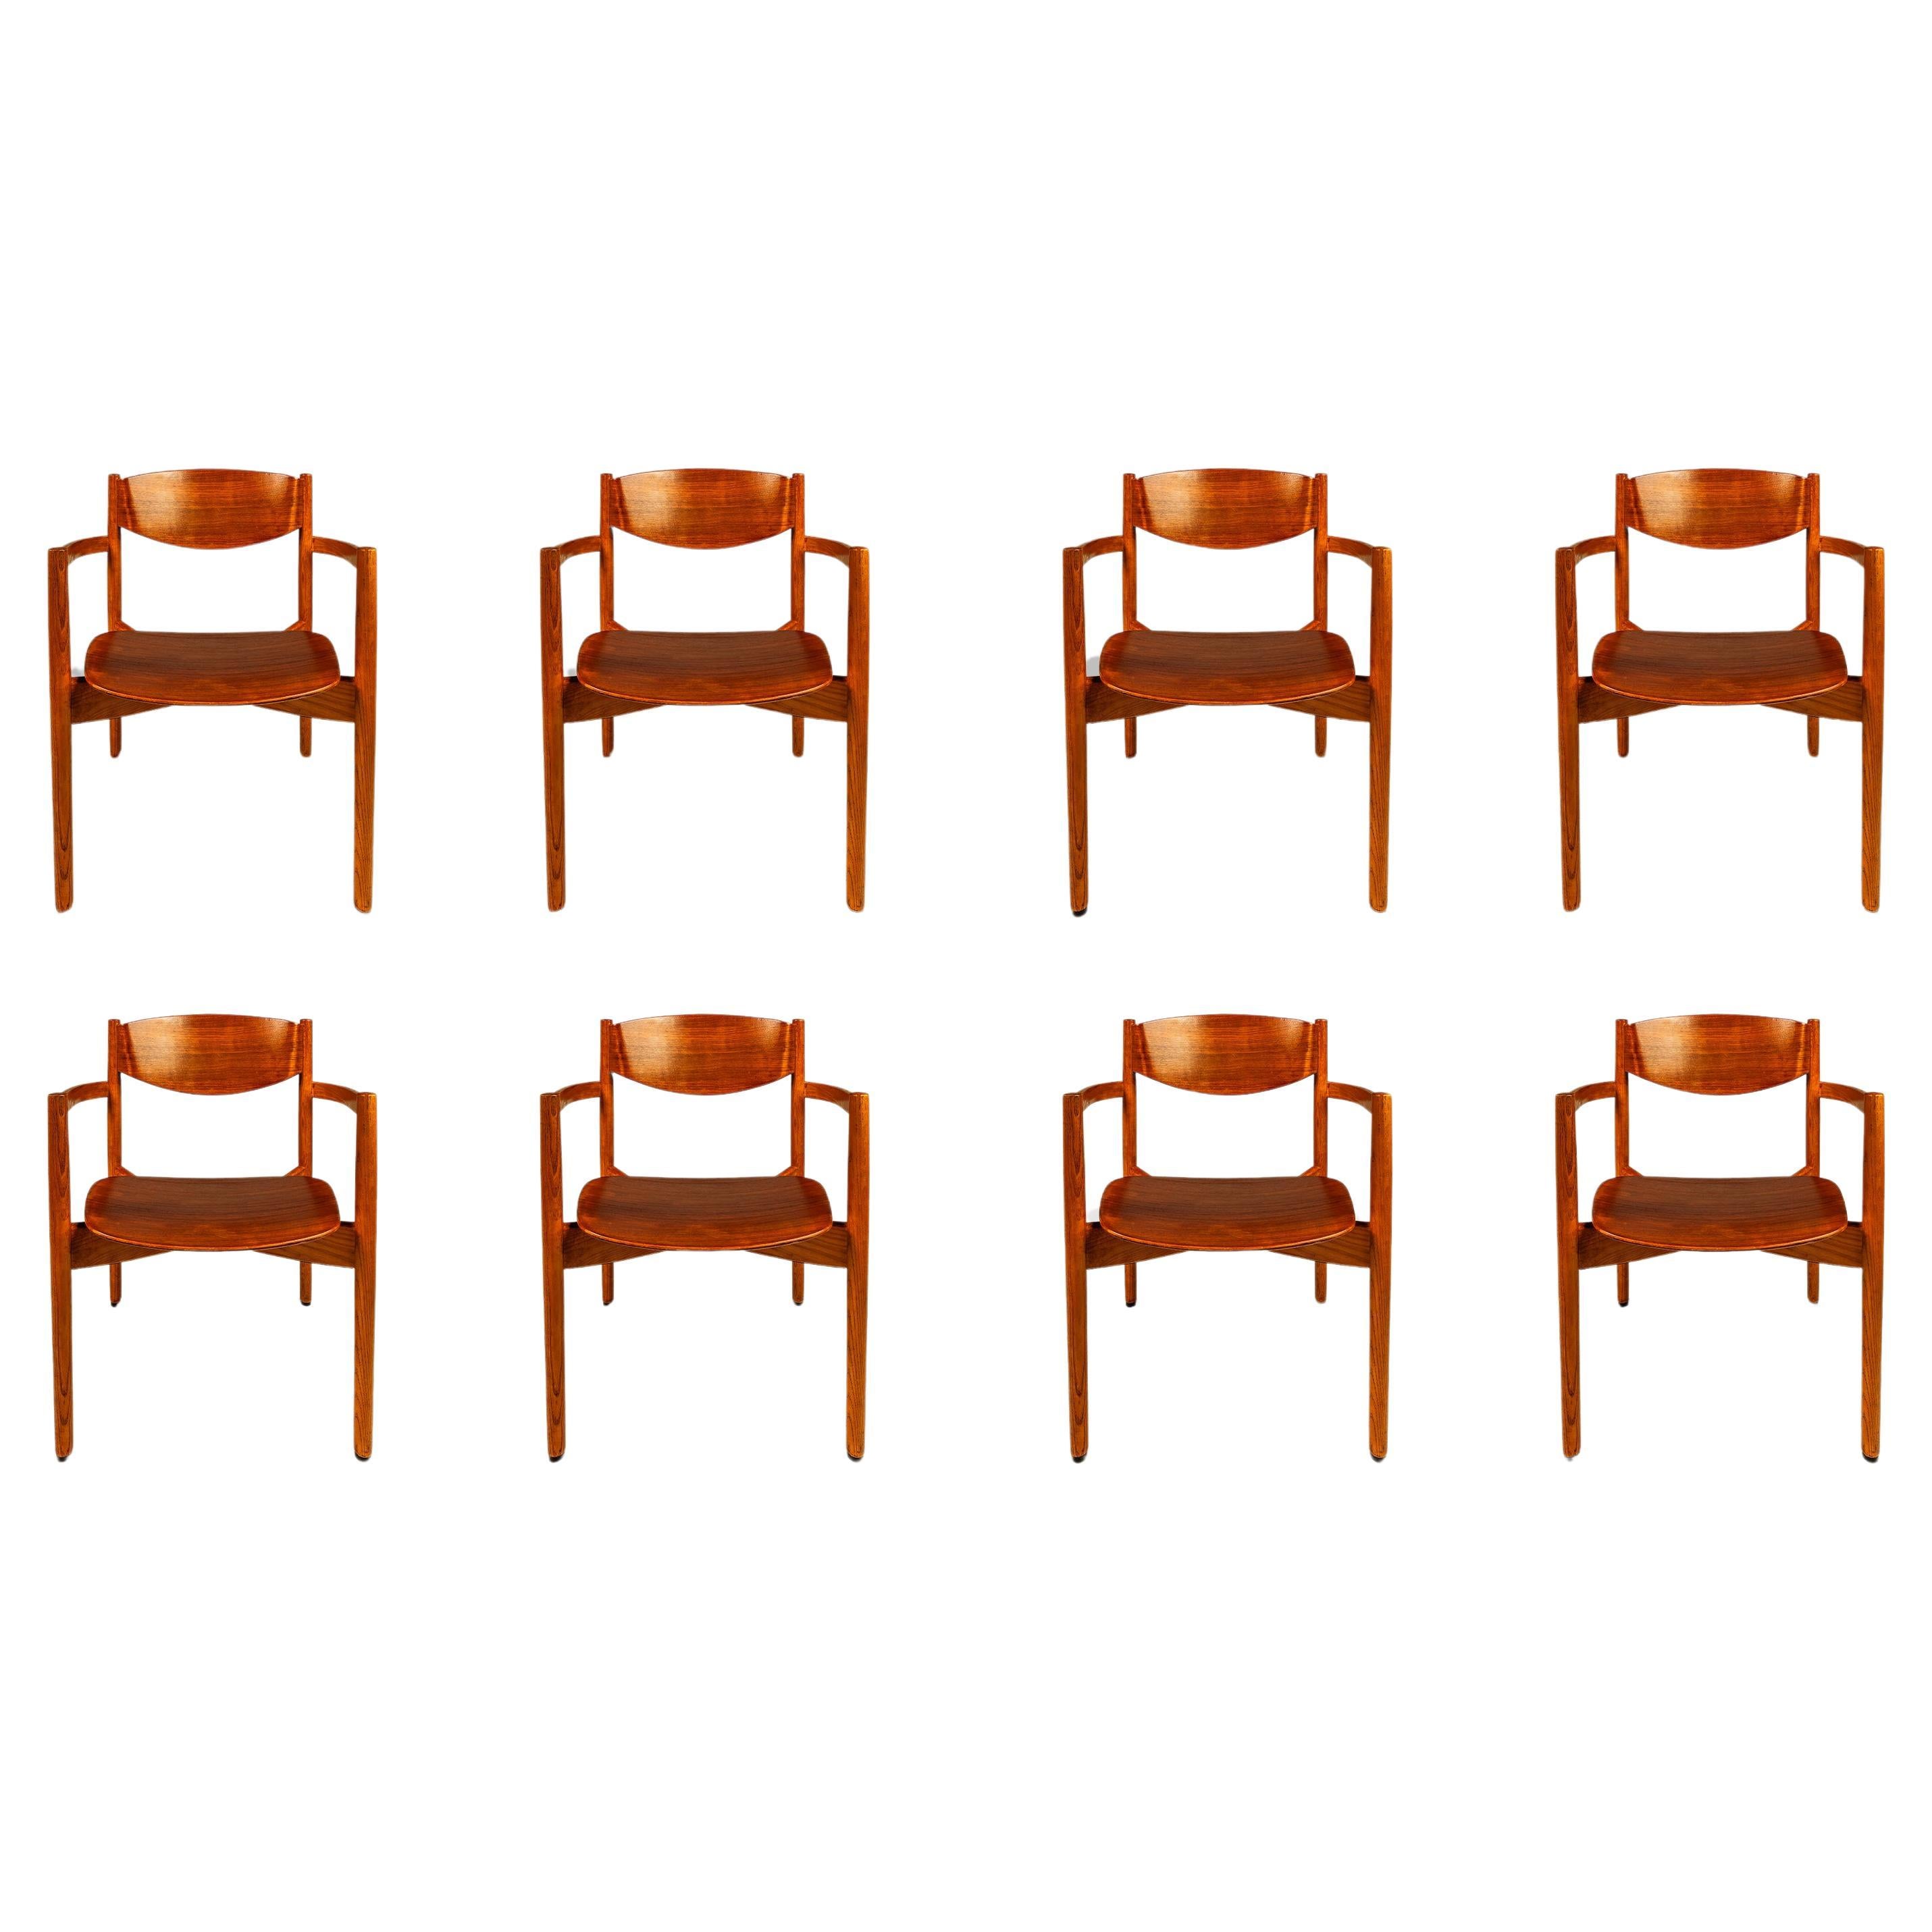 Ensemble de 8 chaises empilables du milieu du siècle dernier : Oak & Walnut, Jens Risom Design, USA, 1960